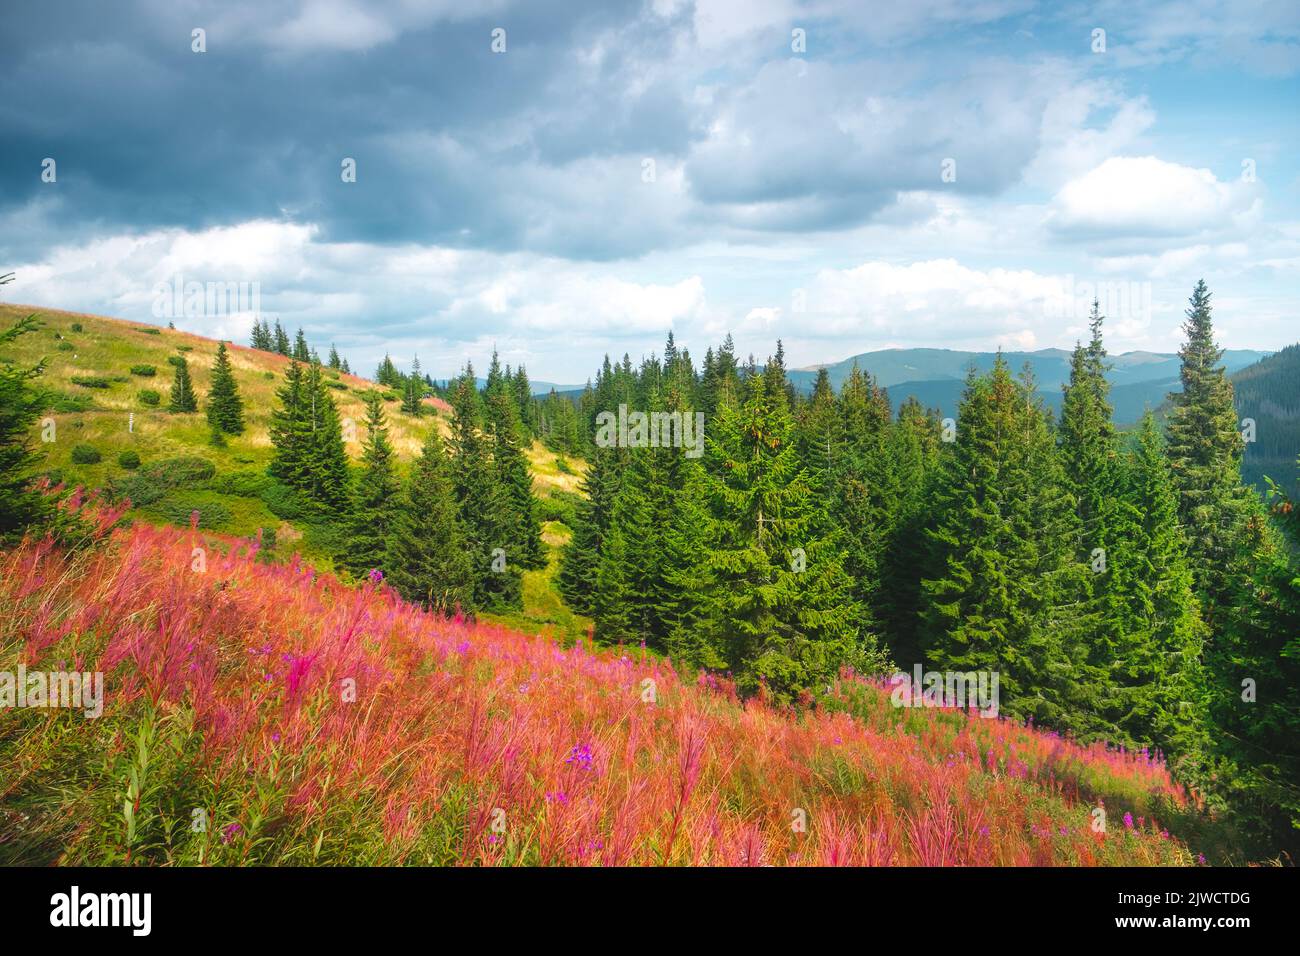 Les montagnes alpines sont impressionnantes par temps ensoleillé. Prairie de fleurs et forêt de pins. Chaîne de montagnes en arrière-plan. Beau paysage de la nature. Image de concept de voyage, d'aventure, de randonnée. Carpathian montagnes Banque D'Images